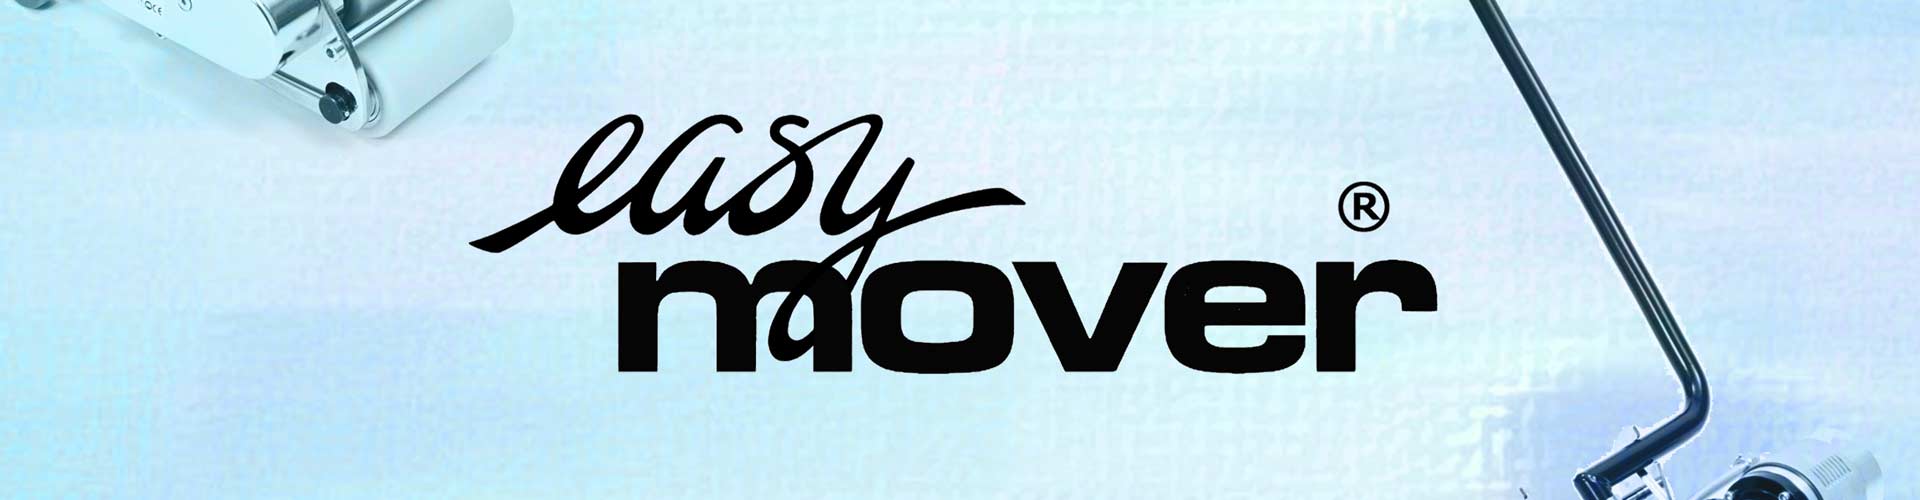 easy-mover-bg-nt.jpg